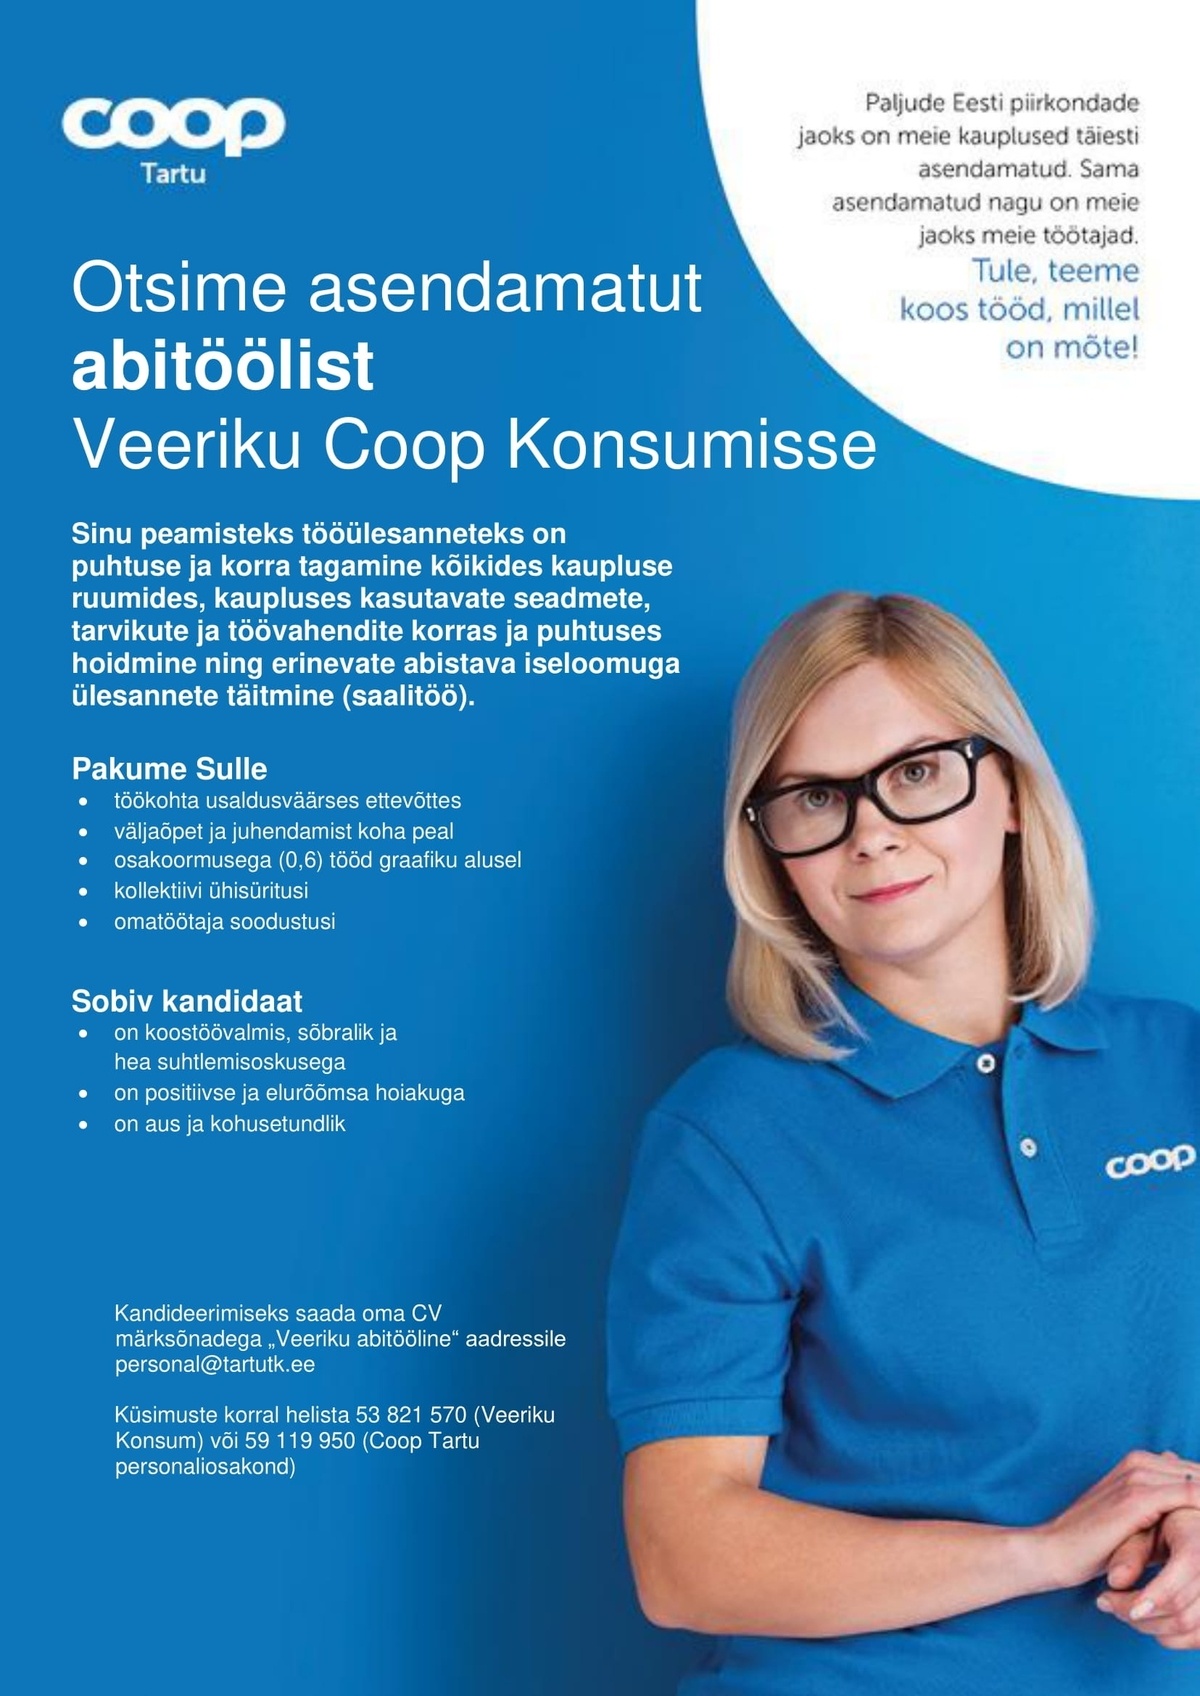 CVKeskus.ee klient Abitööline-koristaja (Coop Tartu Veeriku Konsum)